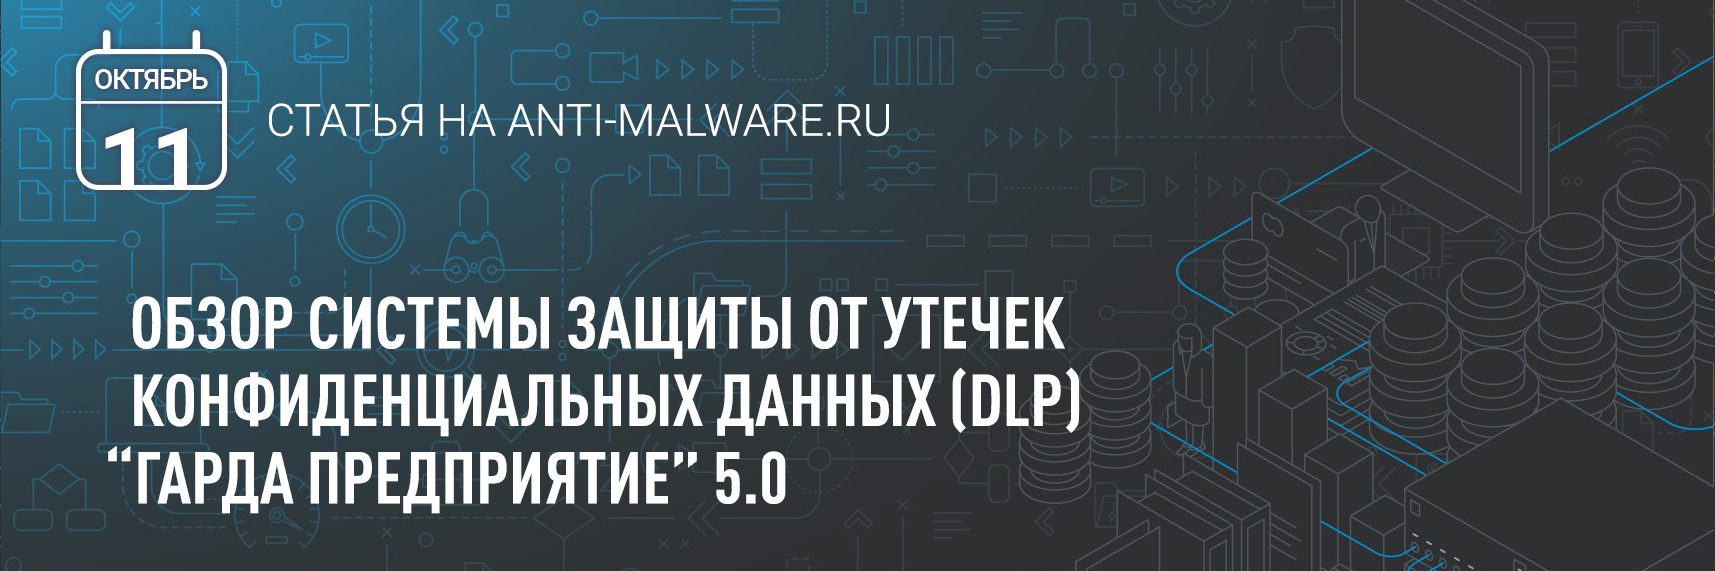 [Anti-Malware] Обзор Гарда Предприятия 5.0, системы защиты от утечек конфиденциальных данных (DLP)